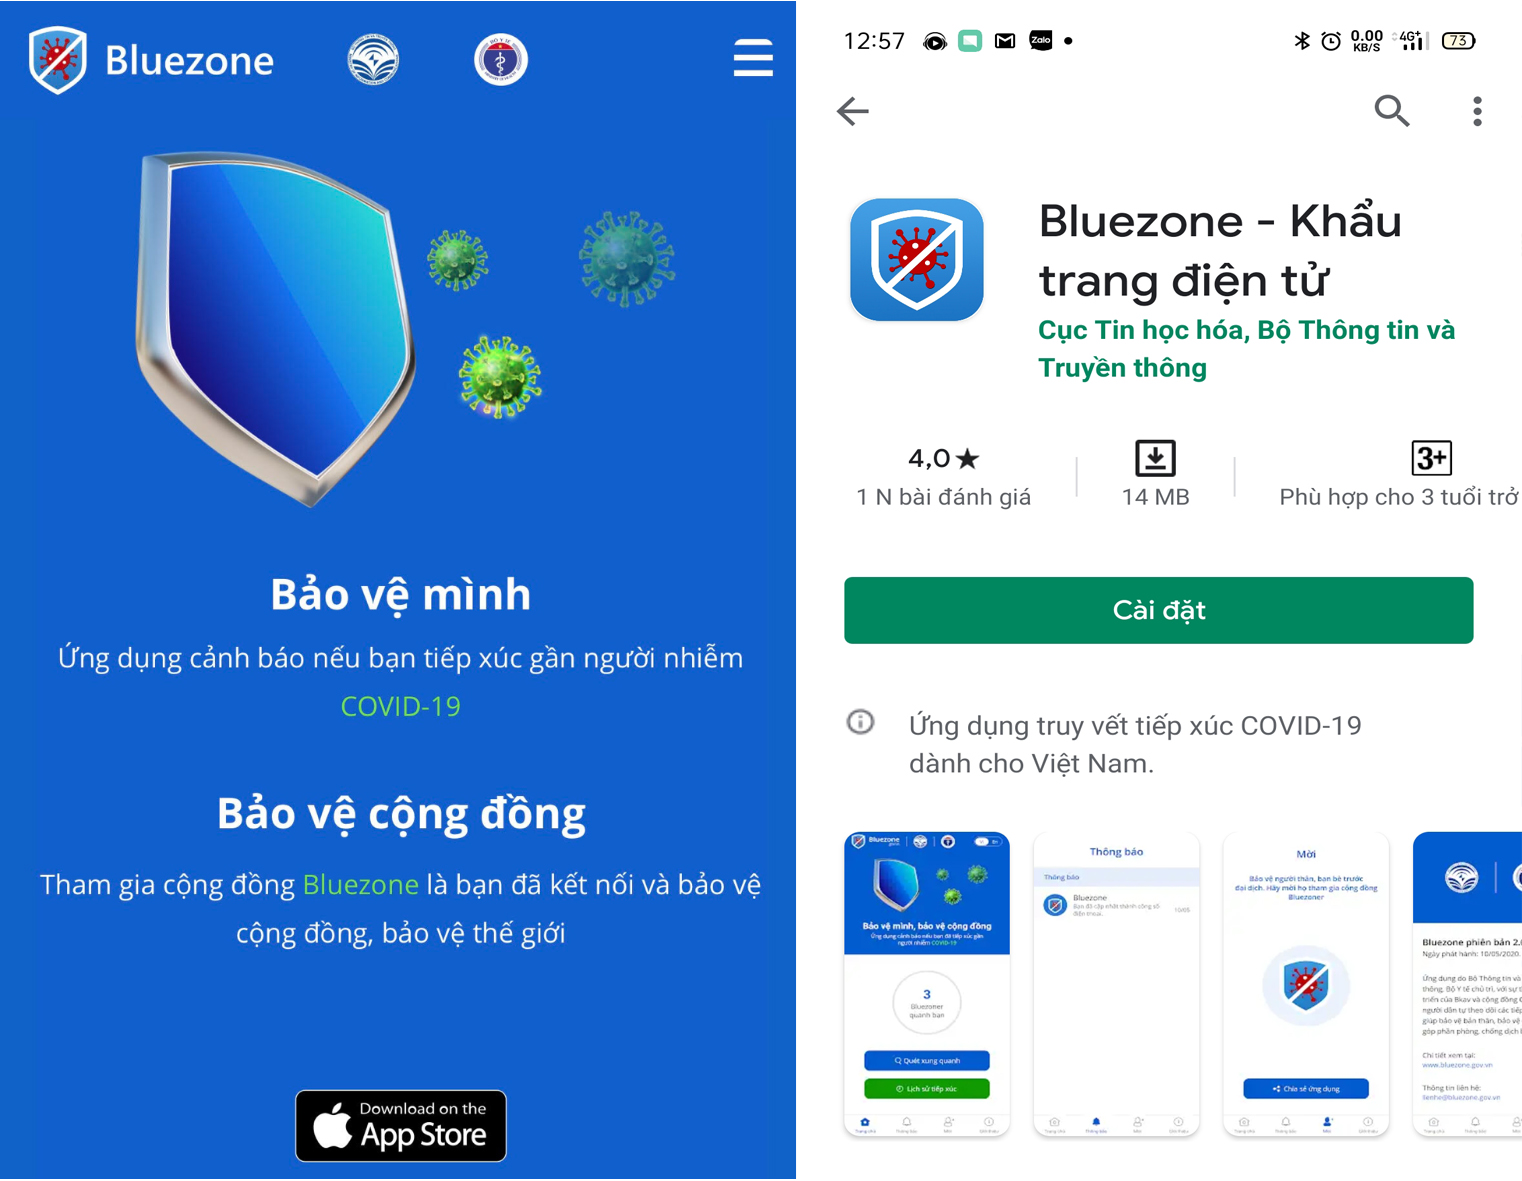 Khẩu trang điện tử Bluezone là một trong những phần mềm ứng dụng để hỗ trợ phòng, chống dịch Covid-19.